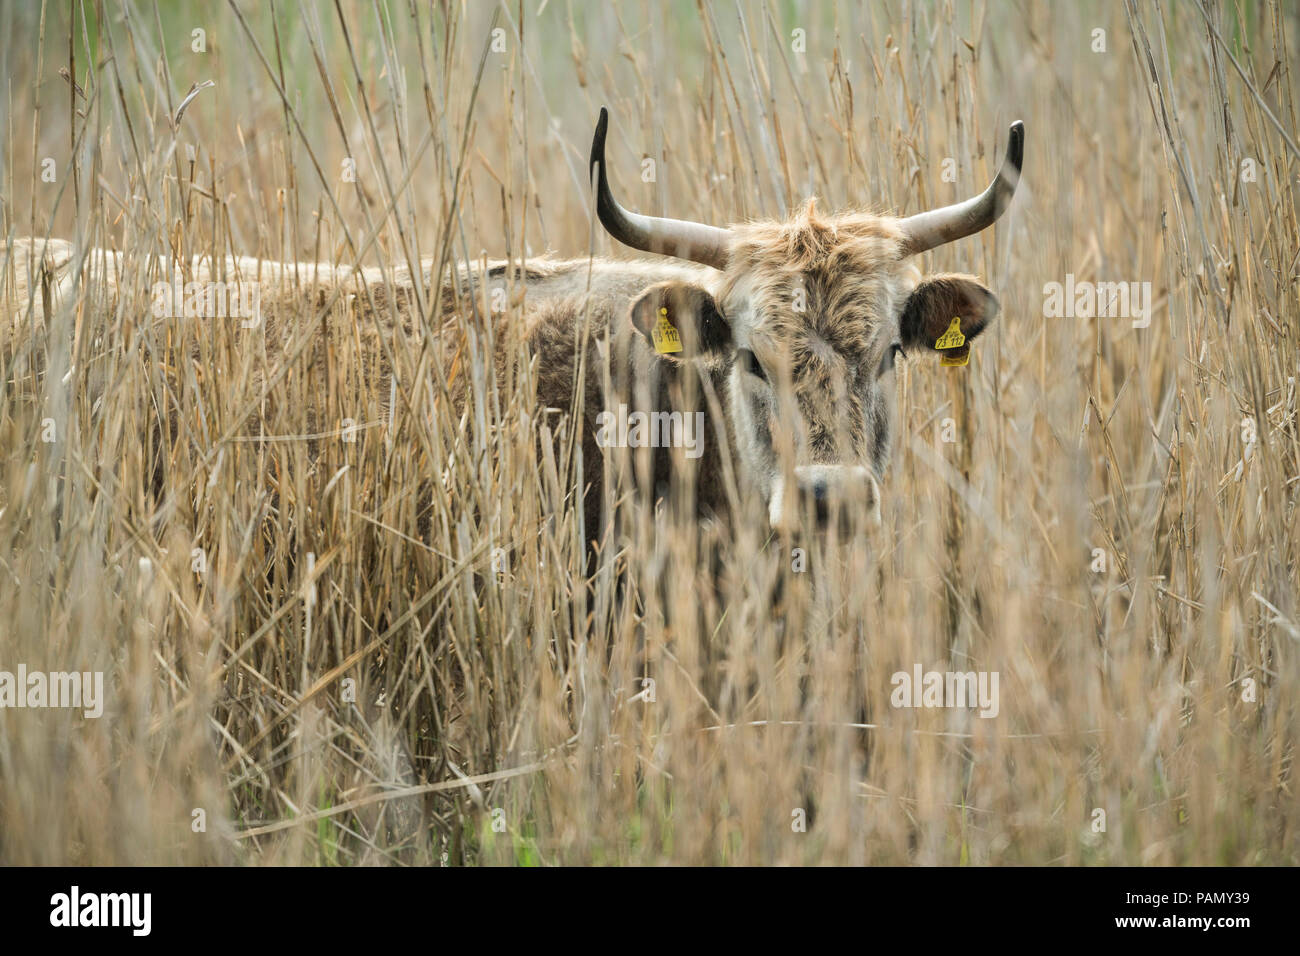 L'Aurochs de Heck, recréé les bovins (Bos primigenius primigenius). Des profils cachés dans reed. Allemagne Banque D'Images